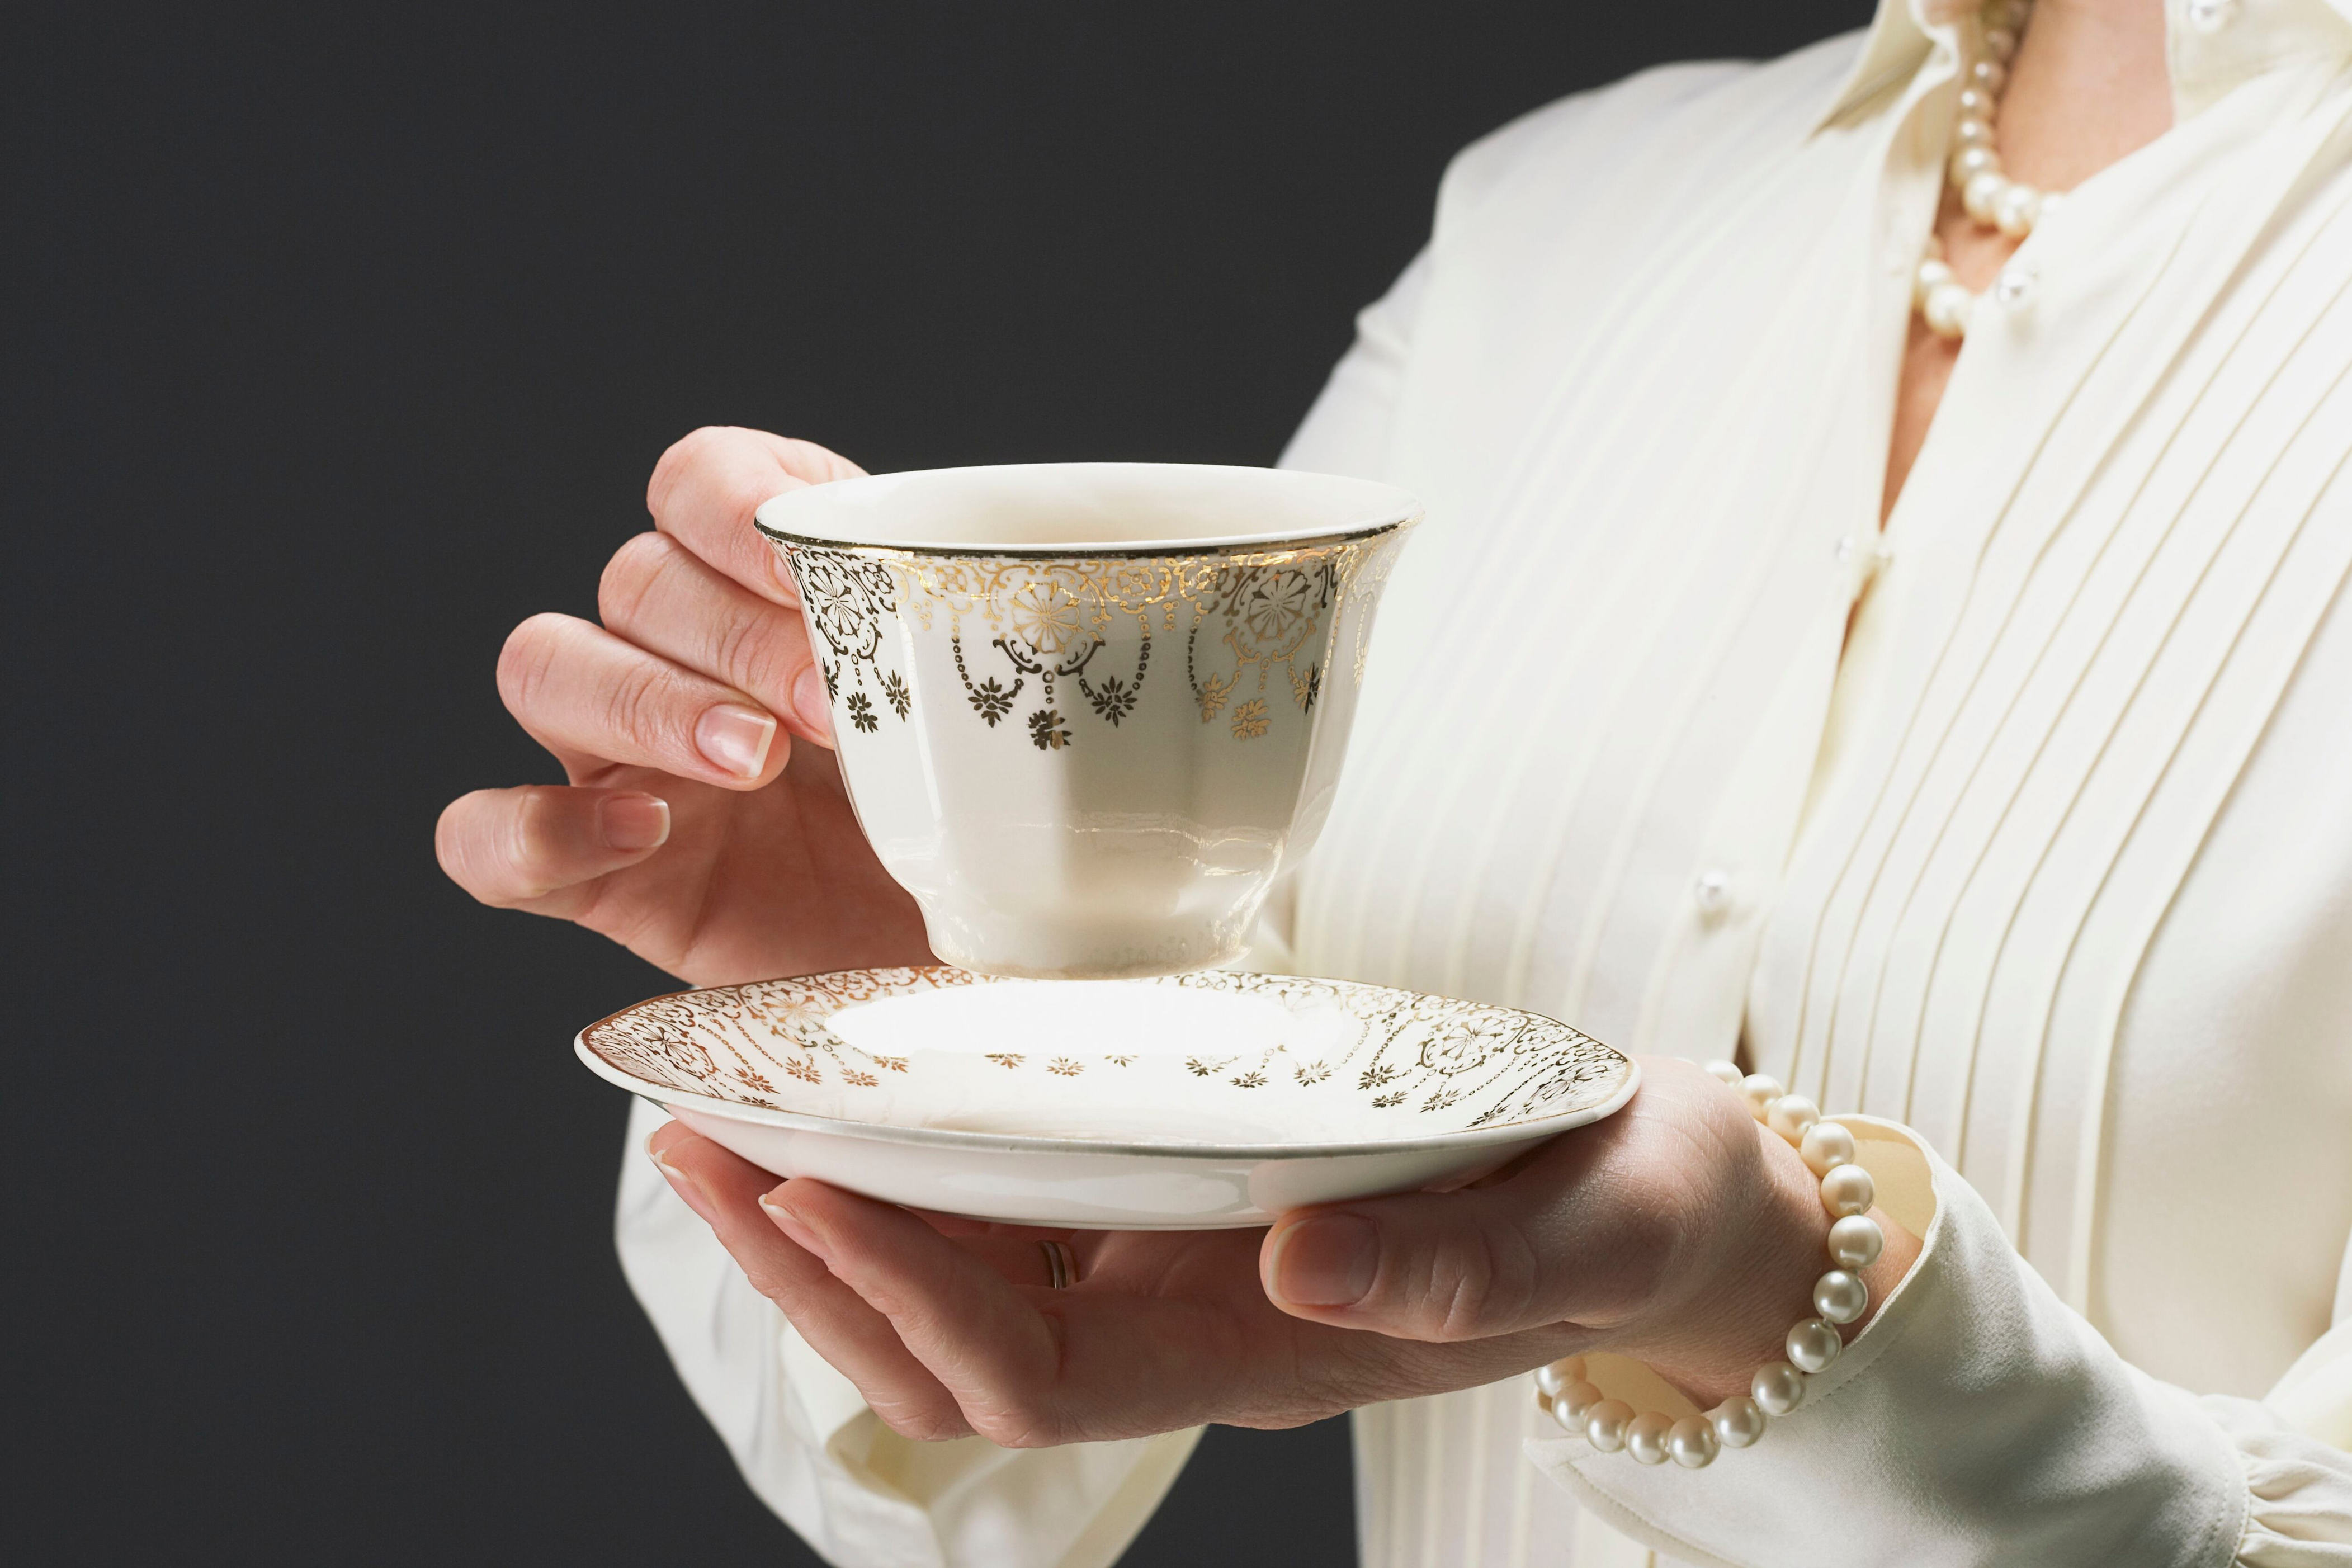 objetos de porcelana: ¿cómo se deben limpiar correctamente para no dañarlos?